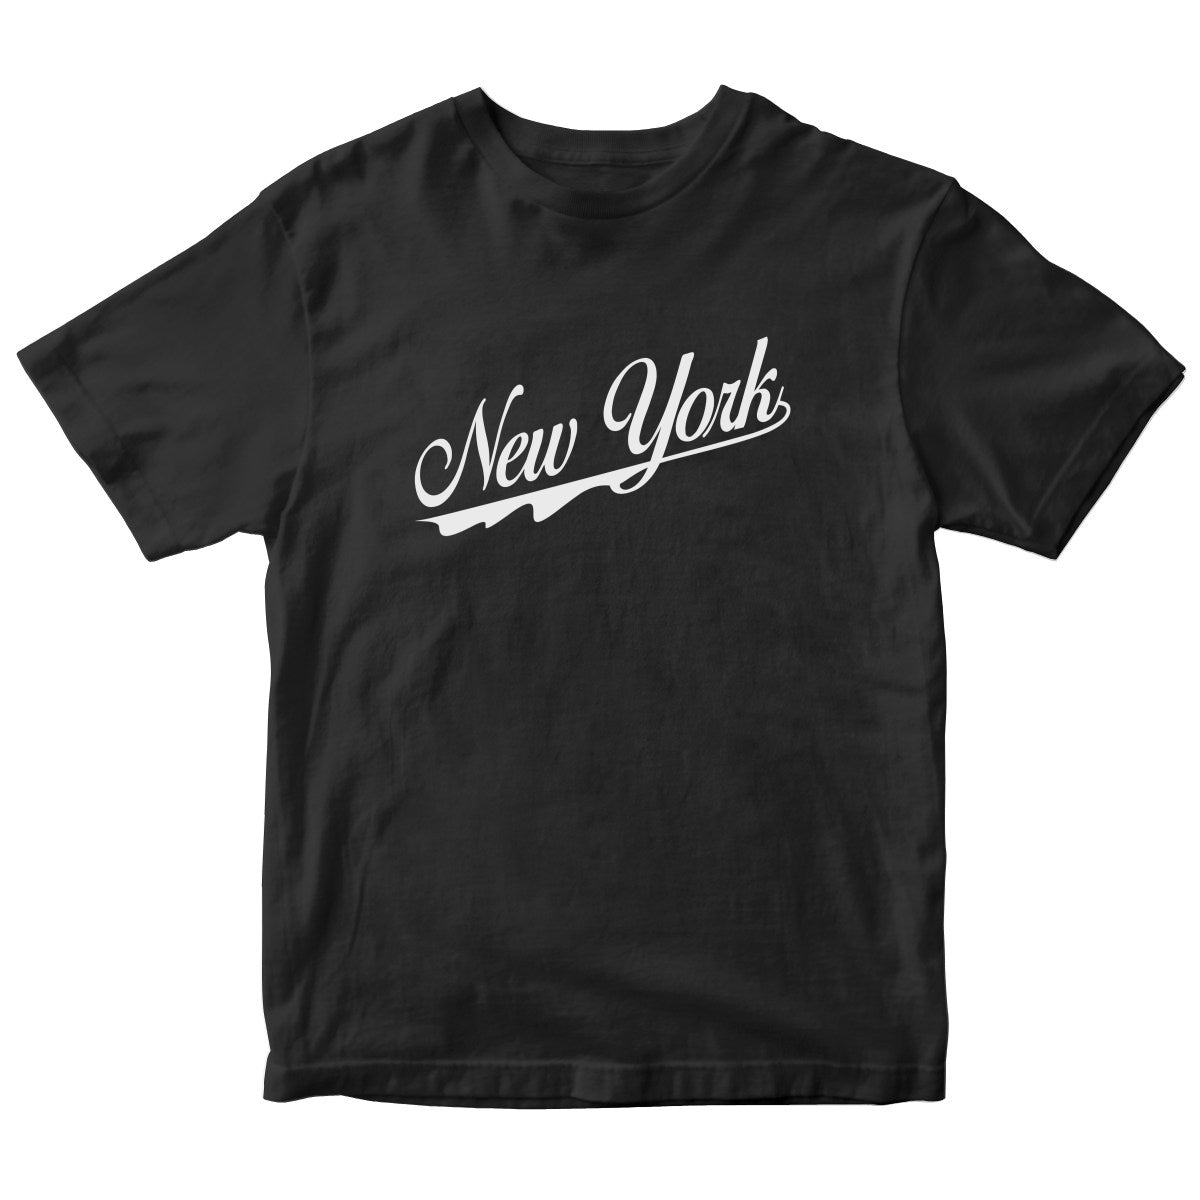 New York Kids T-shirt